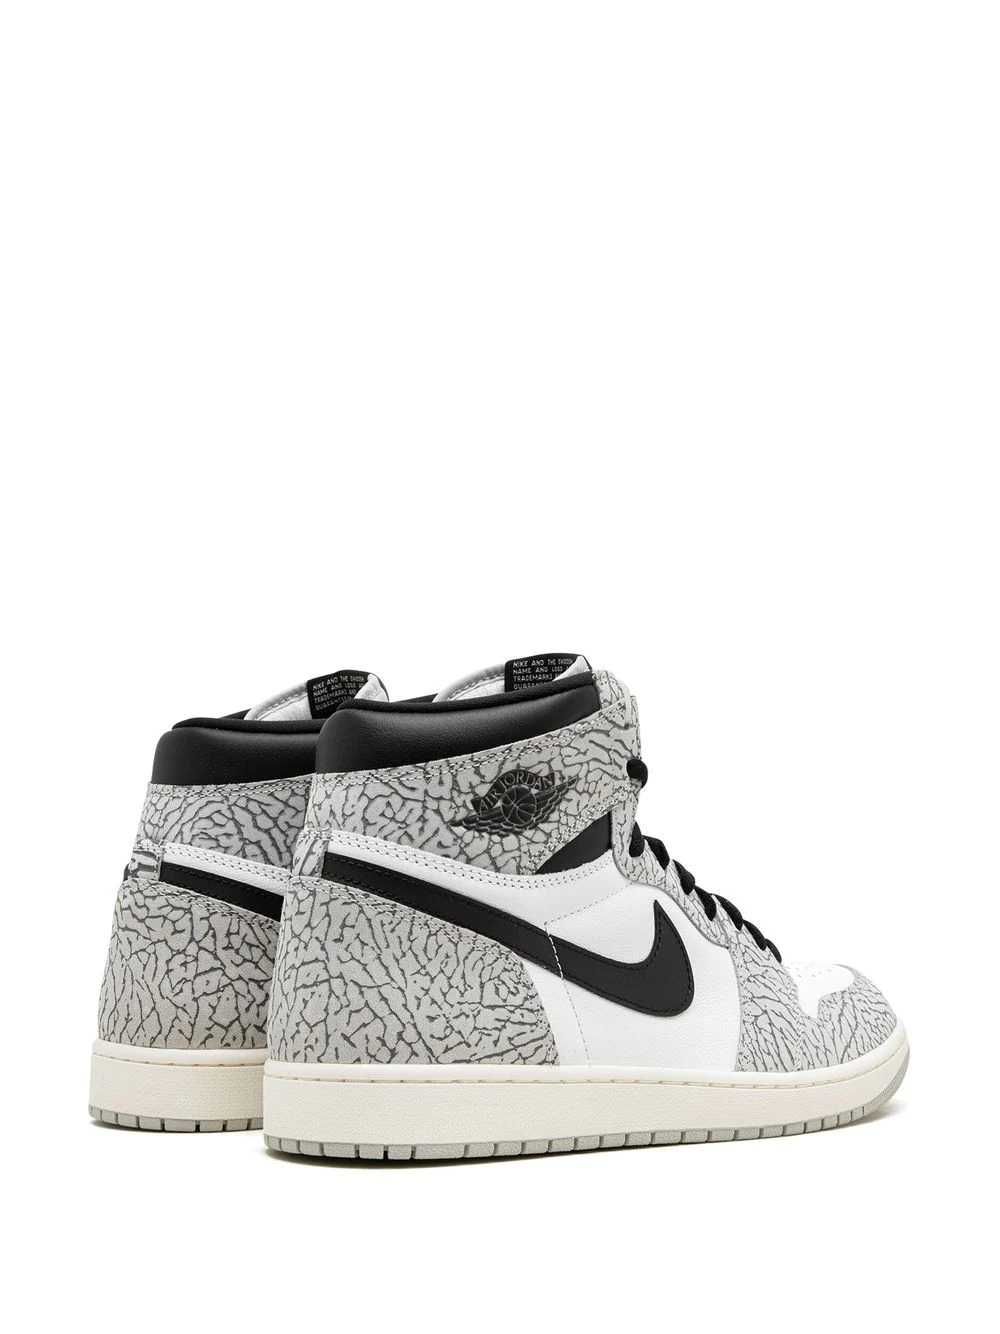 Кроссовки Nike Air Jordan 1 High OG "White Cement" оригинал